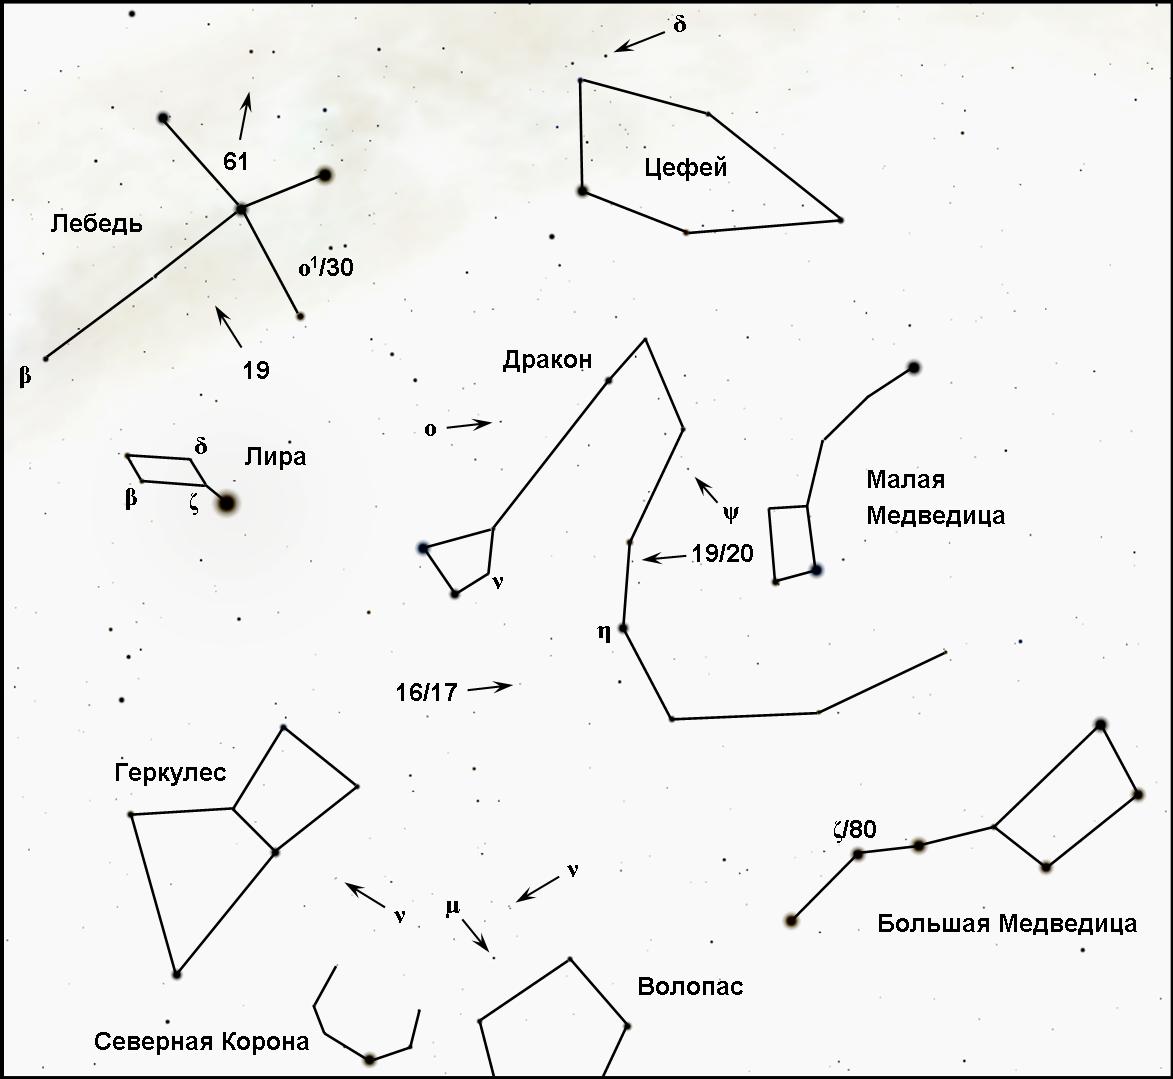 Схематическое изображение созвездий для детей и их названия